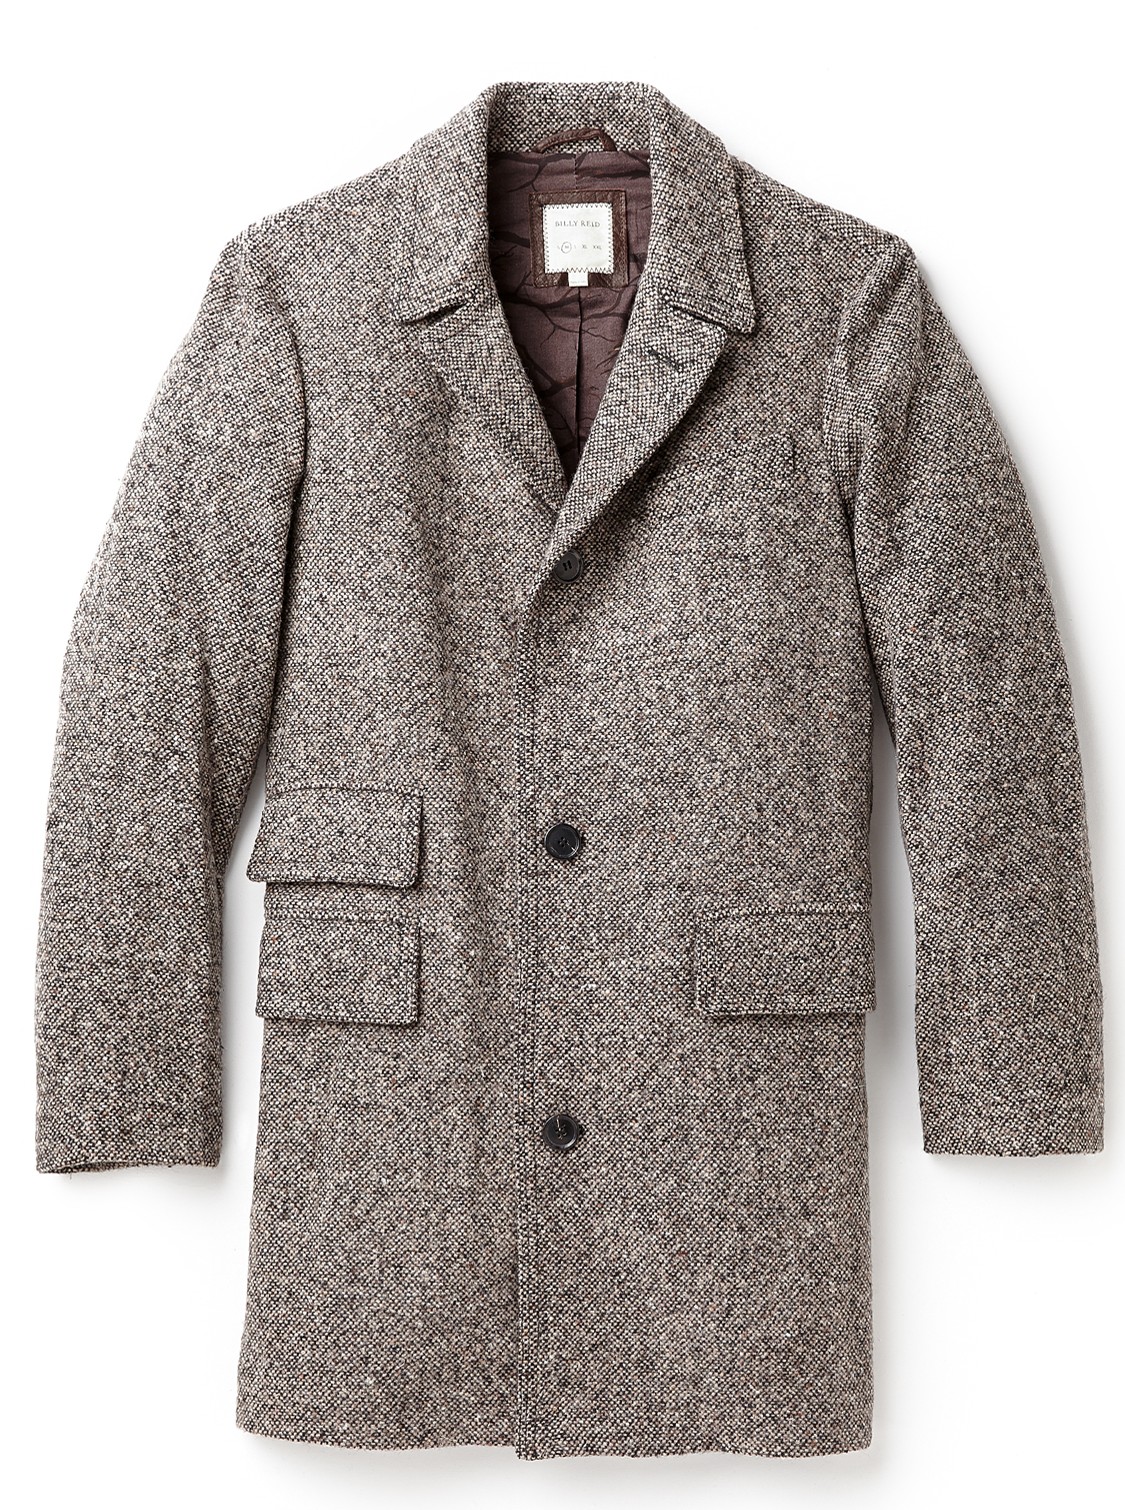 Billy Reid Astor Tweed Coat e1411970056743